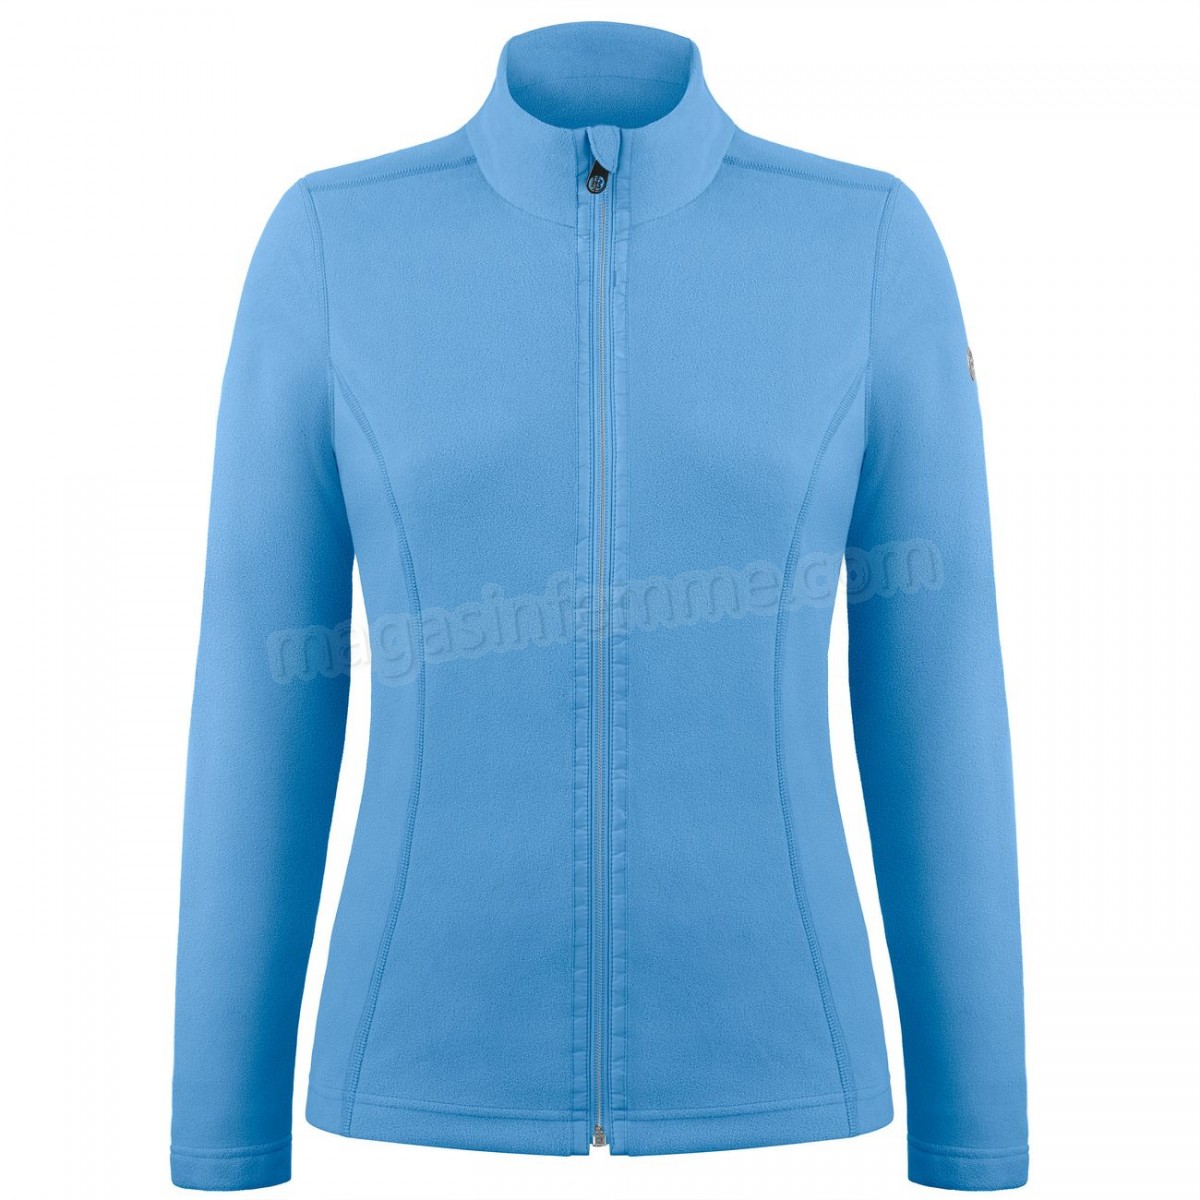 Poivre Blanc-Sports d'hiver femme POIVRE BLANC Veste Polaire Poivre Blanc Fleece Jacket 1500 Polar Blue Femme en solde - -0